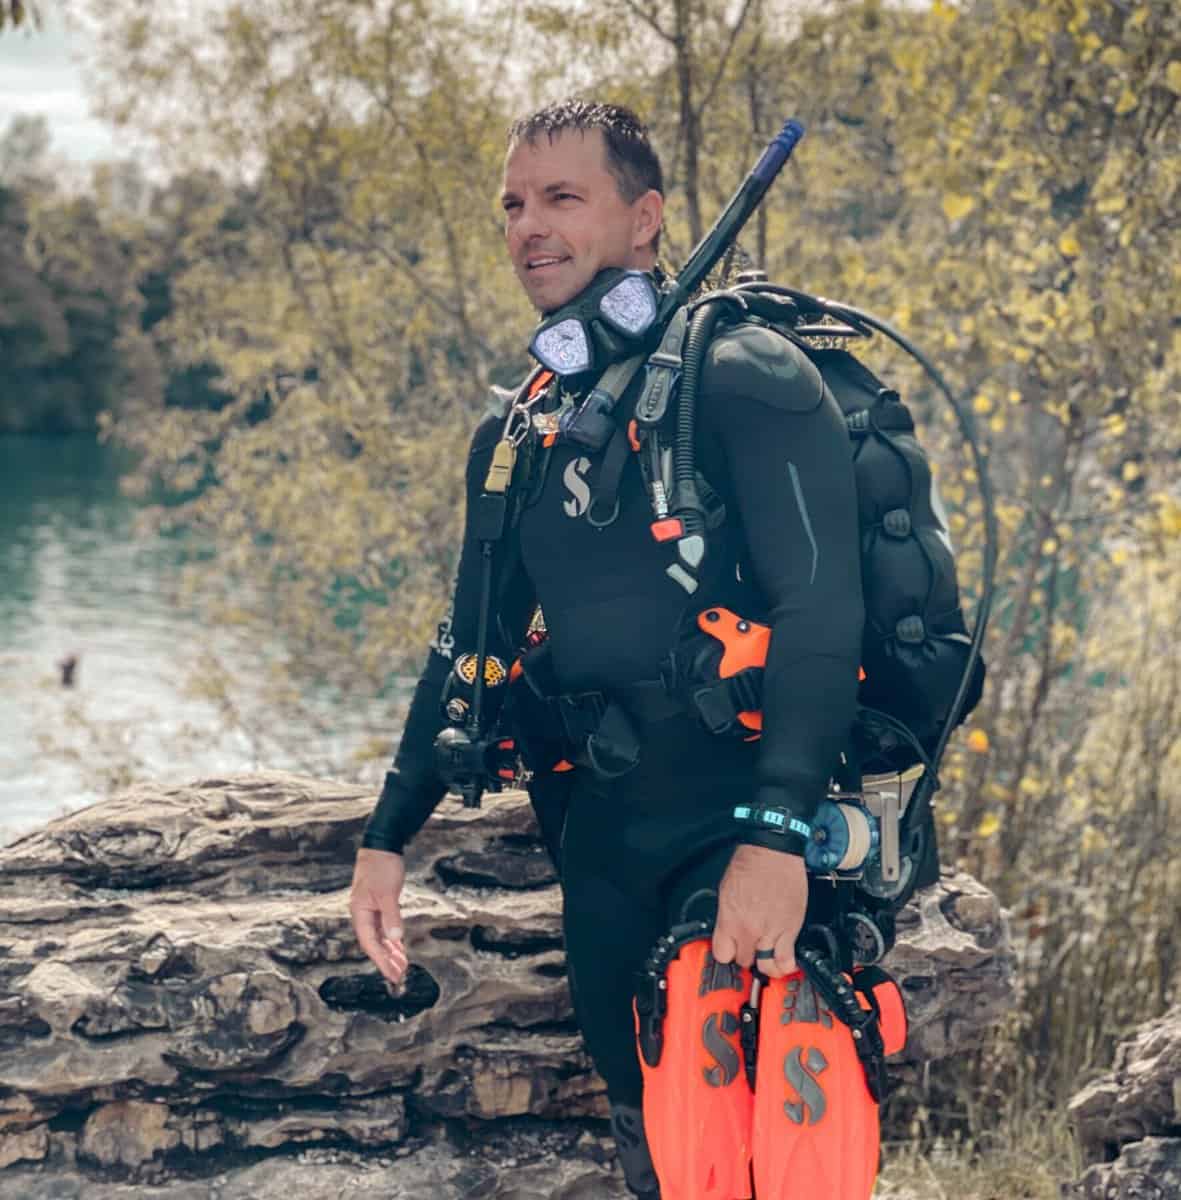 Y-kiki dive instructor Ryan Barr in Mermet Springs, Illinois. (Y-kiki Divers)